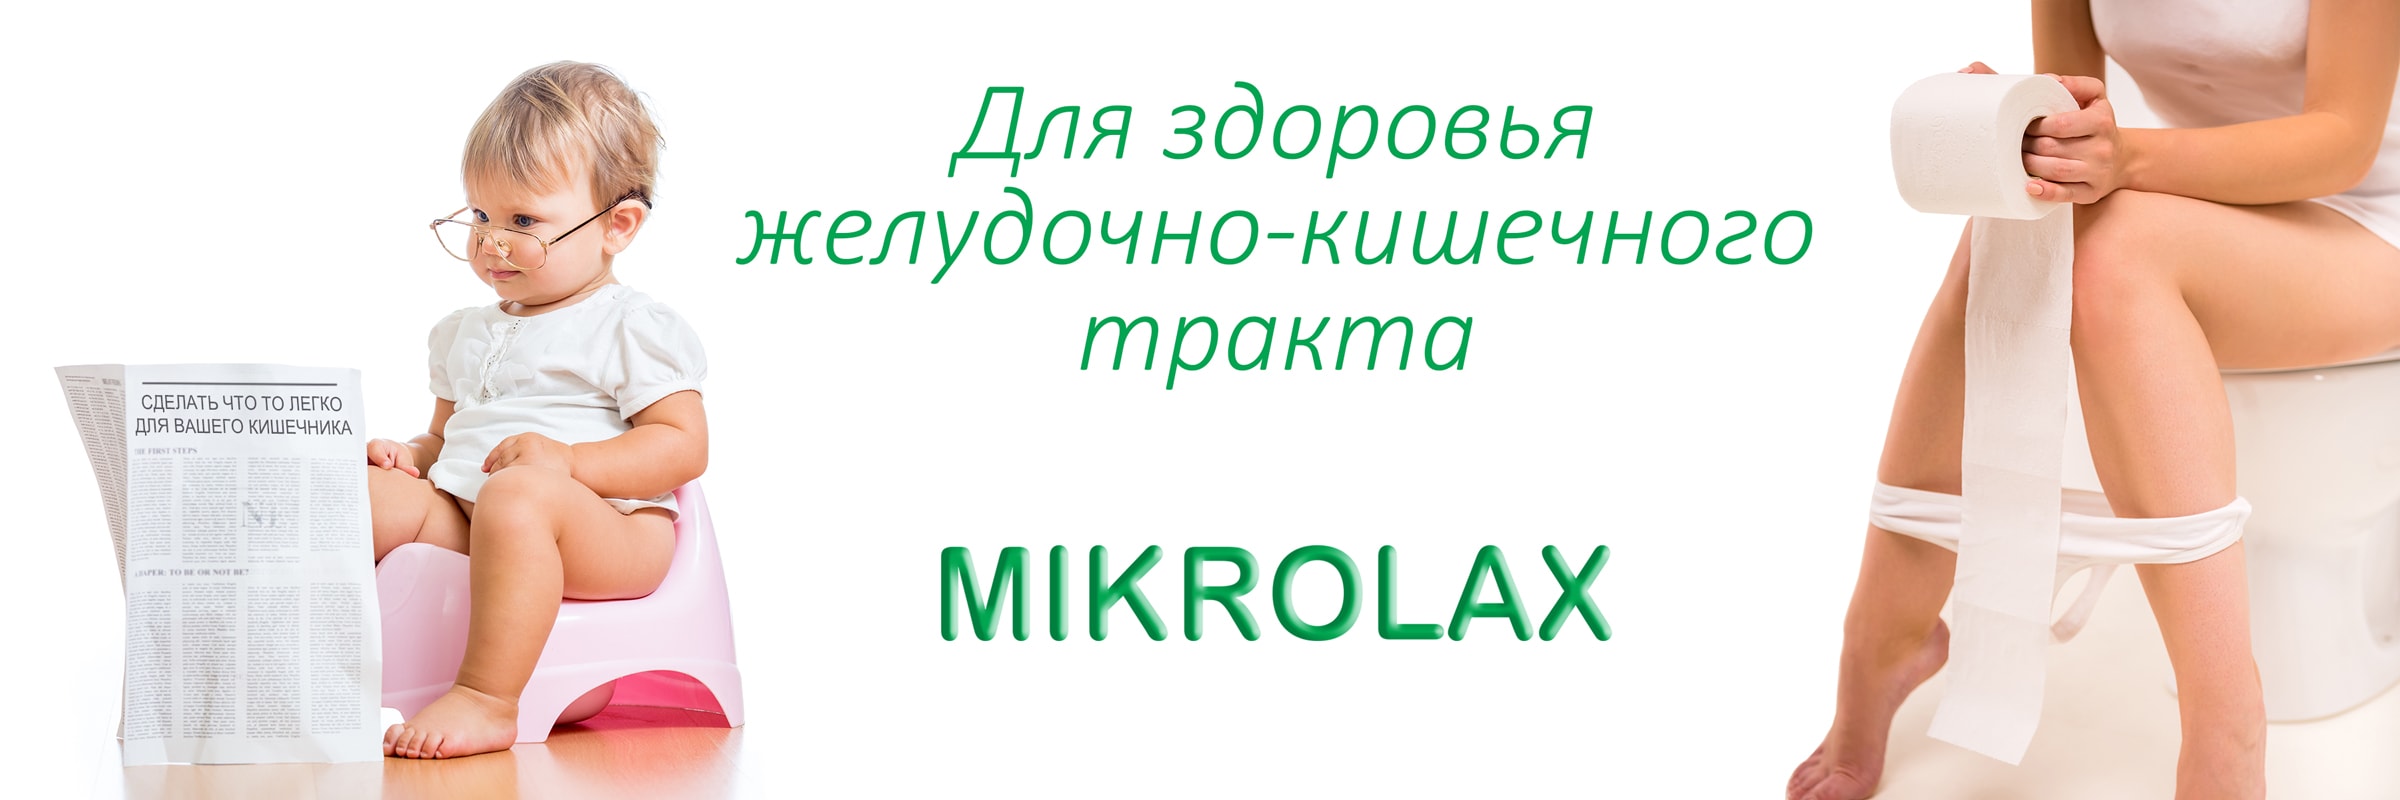 Mikrolaxi